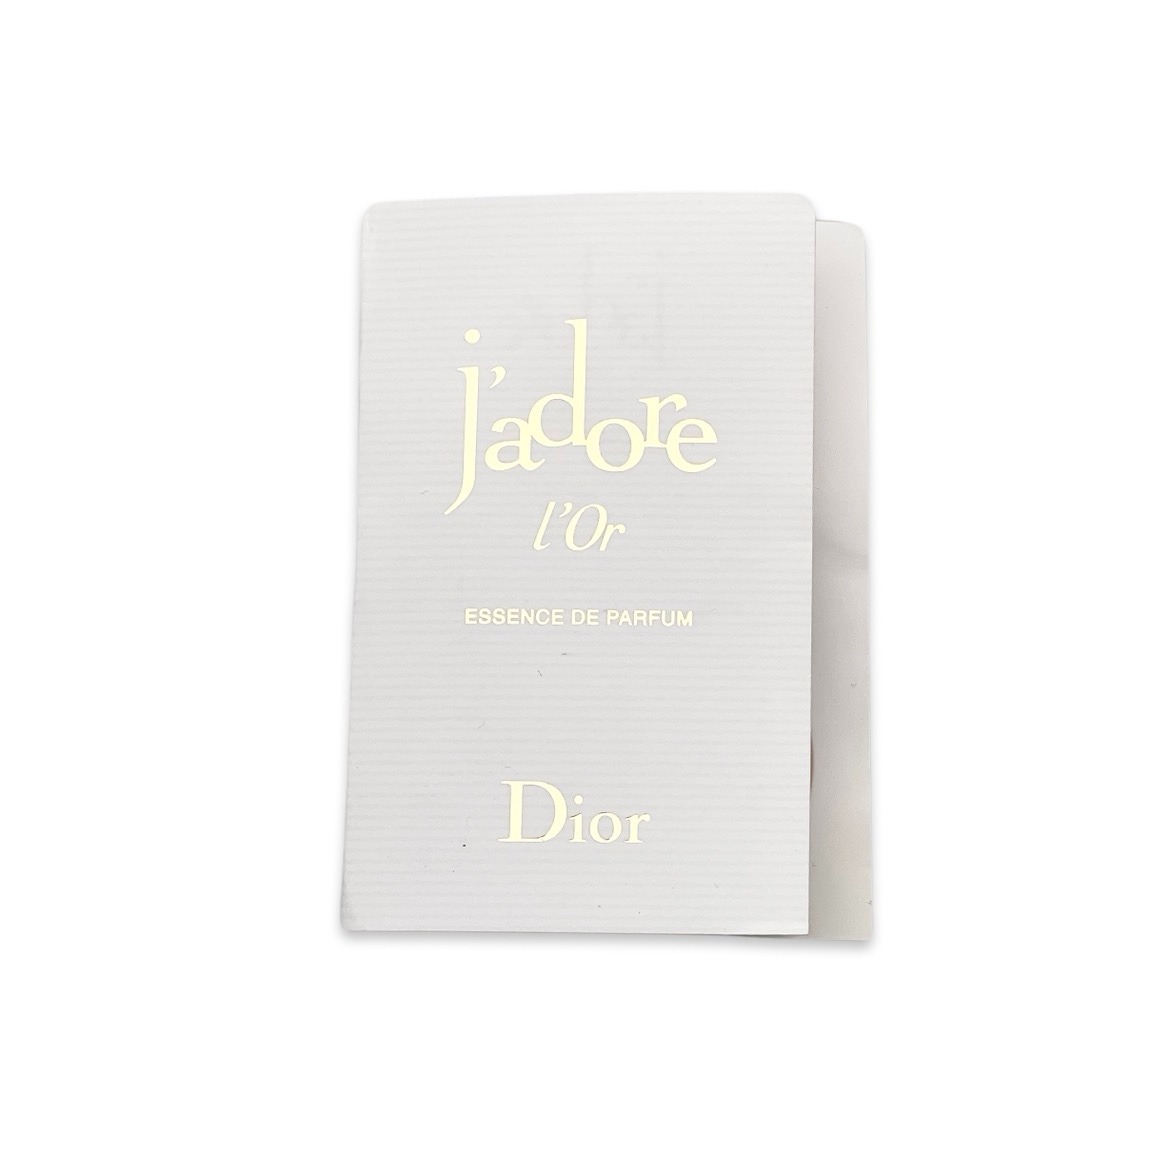 Dior jadore L'Or / Sample (1ml)